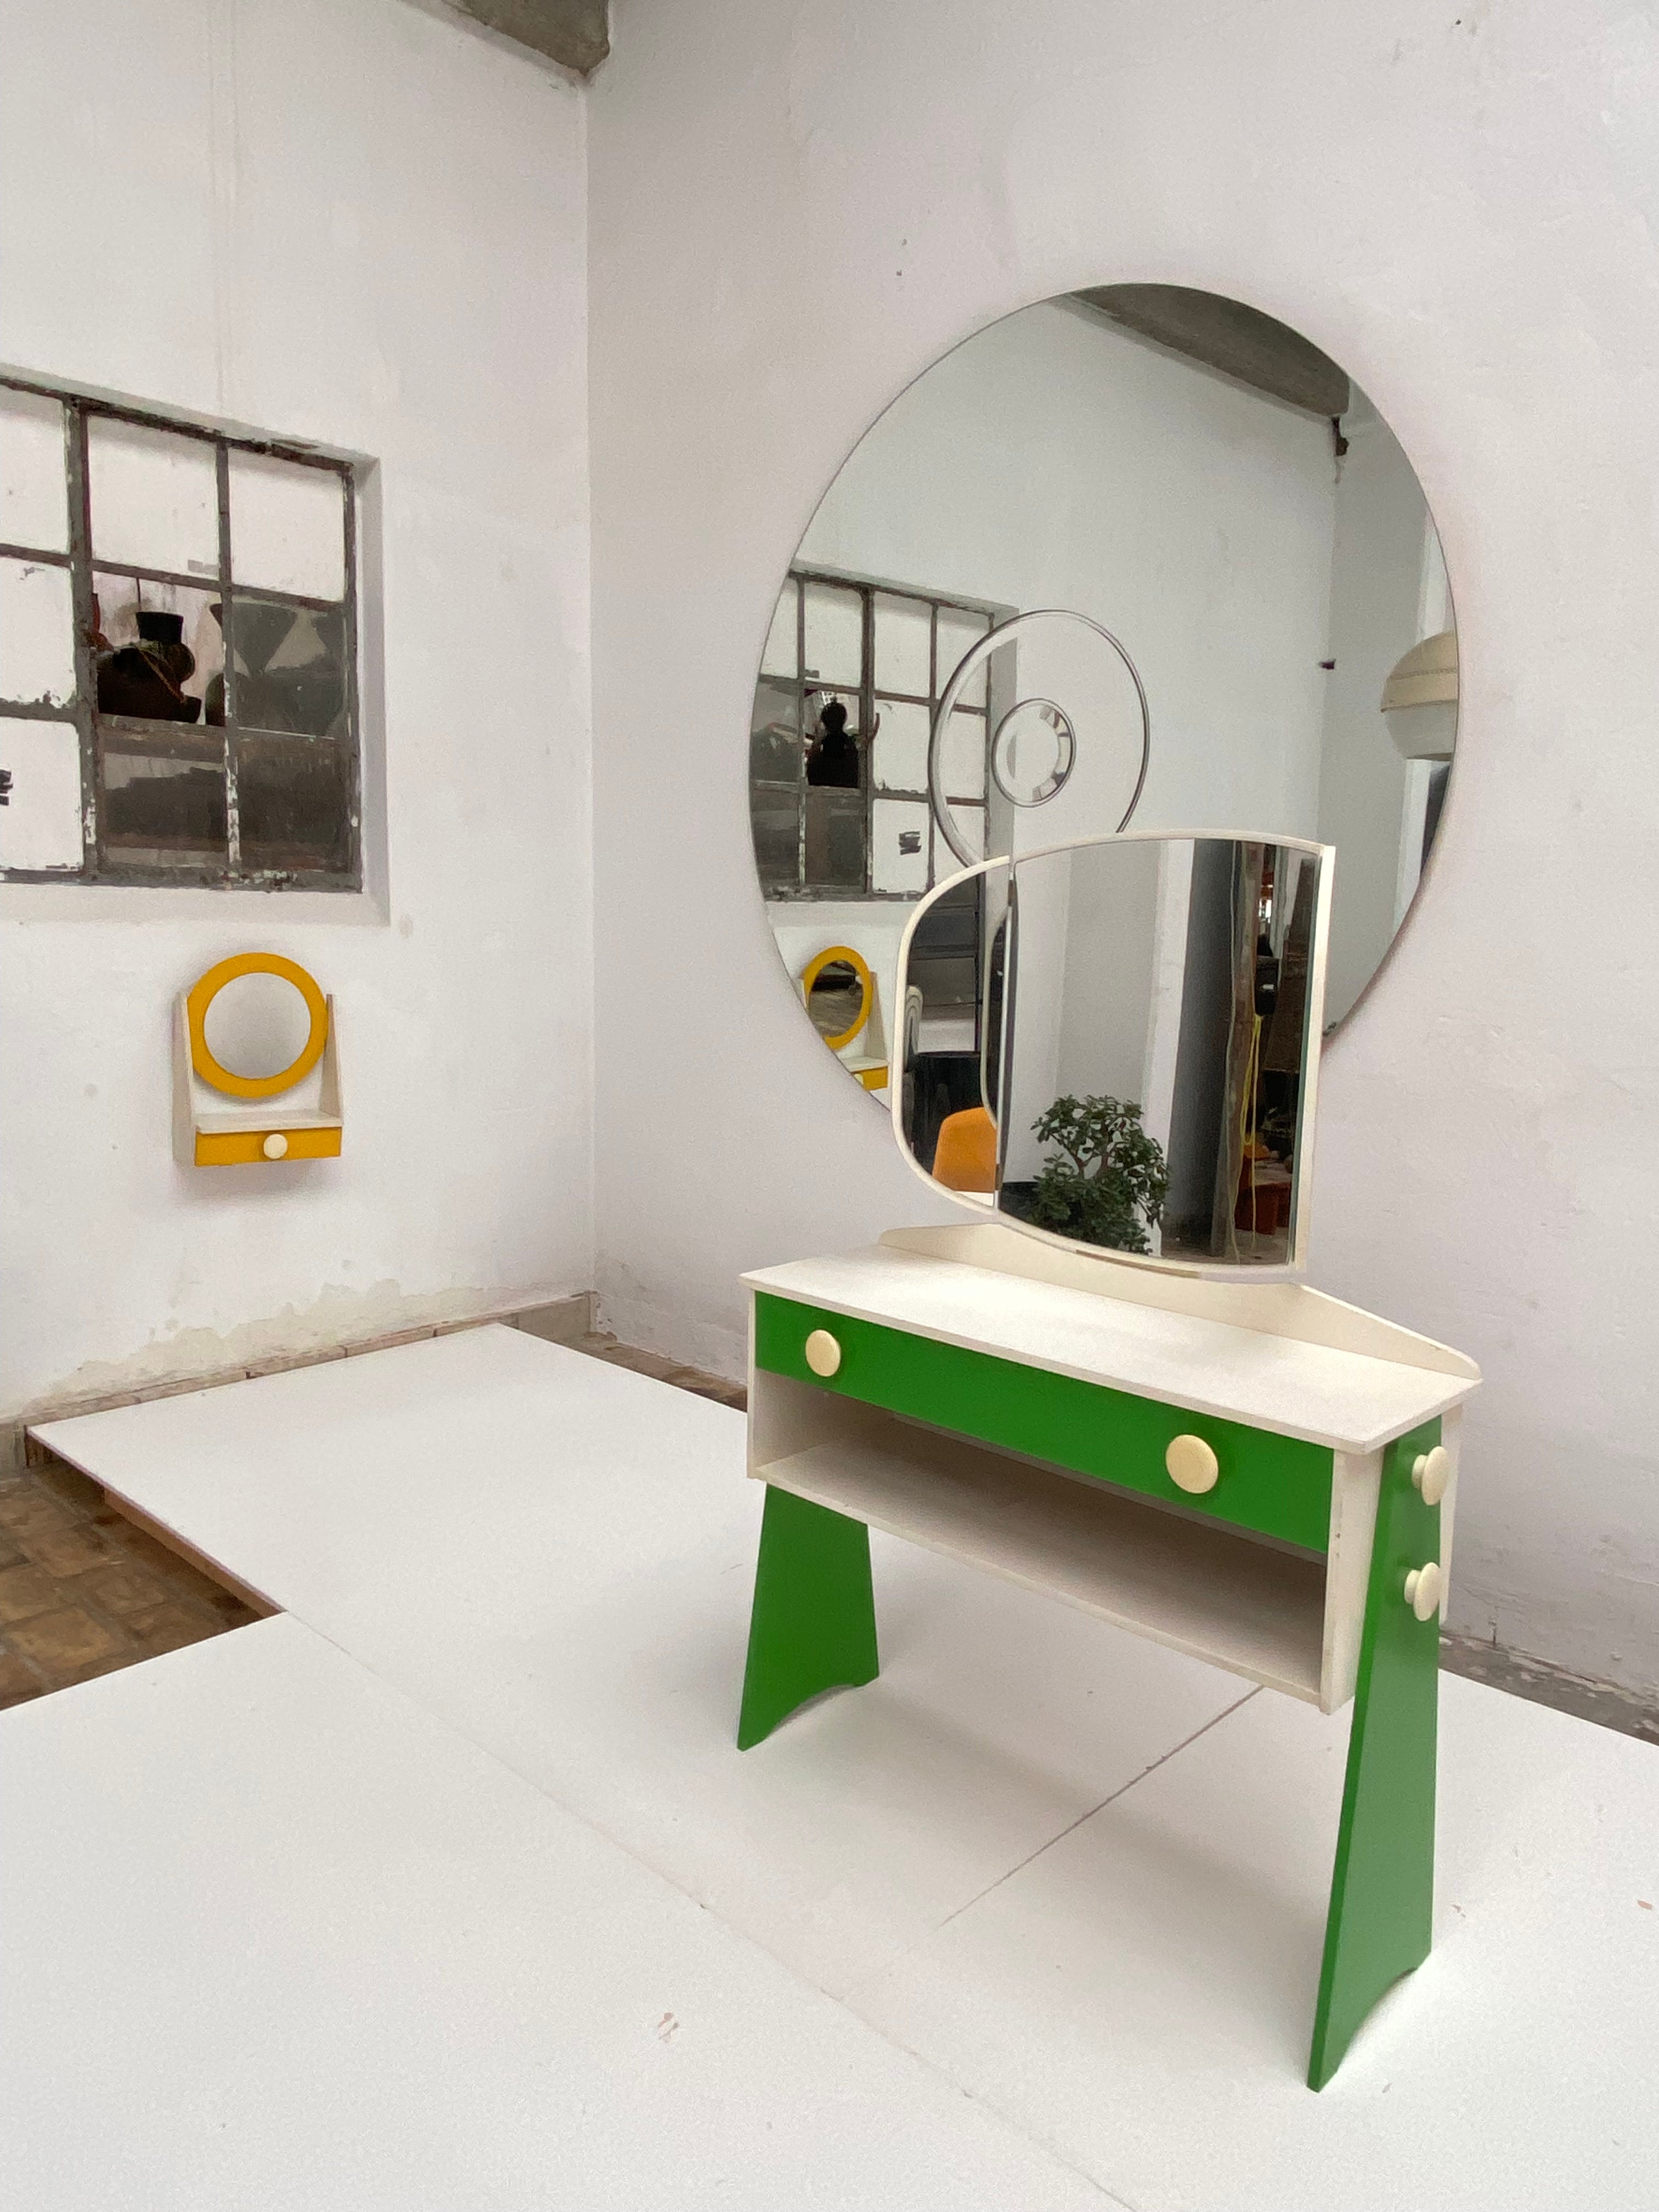 Fantastique vanité / coiffeuse de chambre de l'ère spatiale des années 1970 

Le meuble-lavabo est équipé d'un miroir réglable et d'un tiroir pour ranger vos produits de maquillage.

Un joli miroir mural jaune et blanc avec une petite boîte de